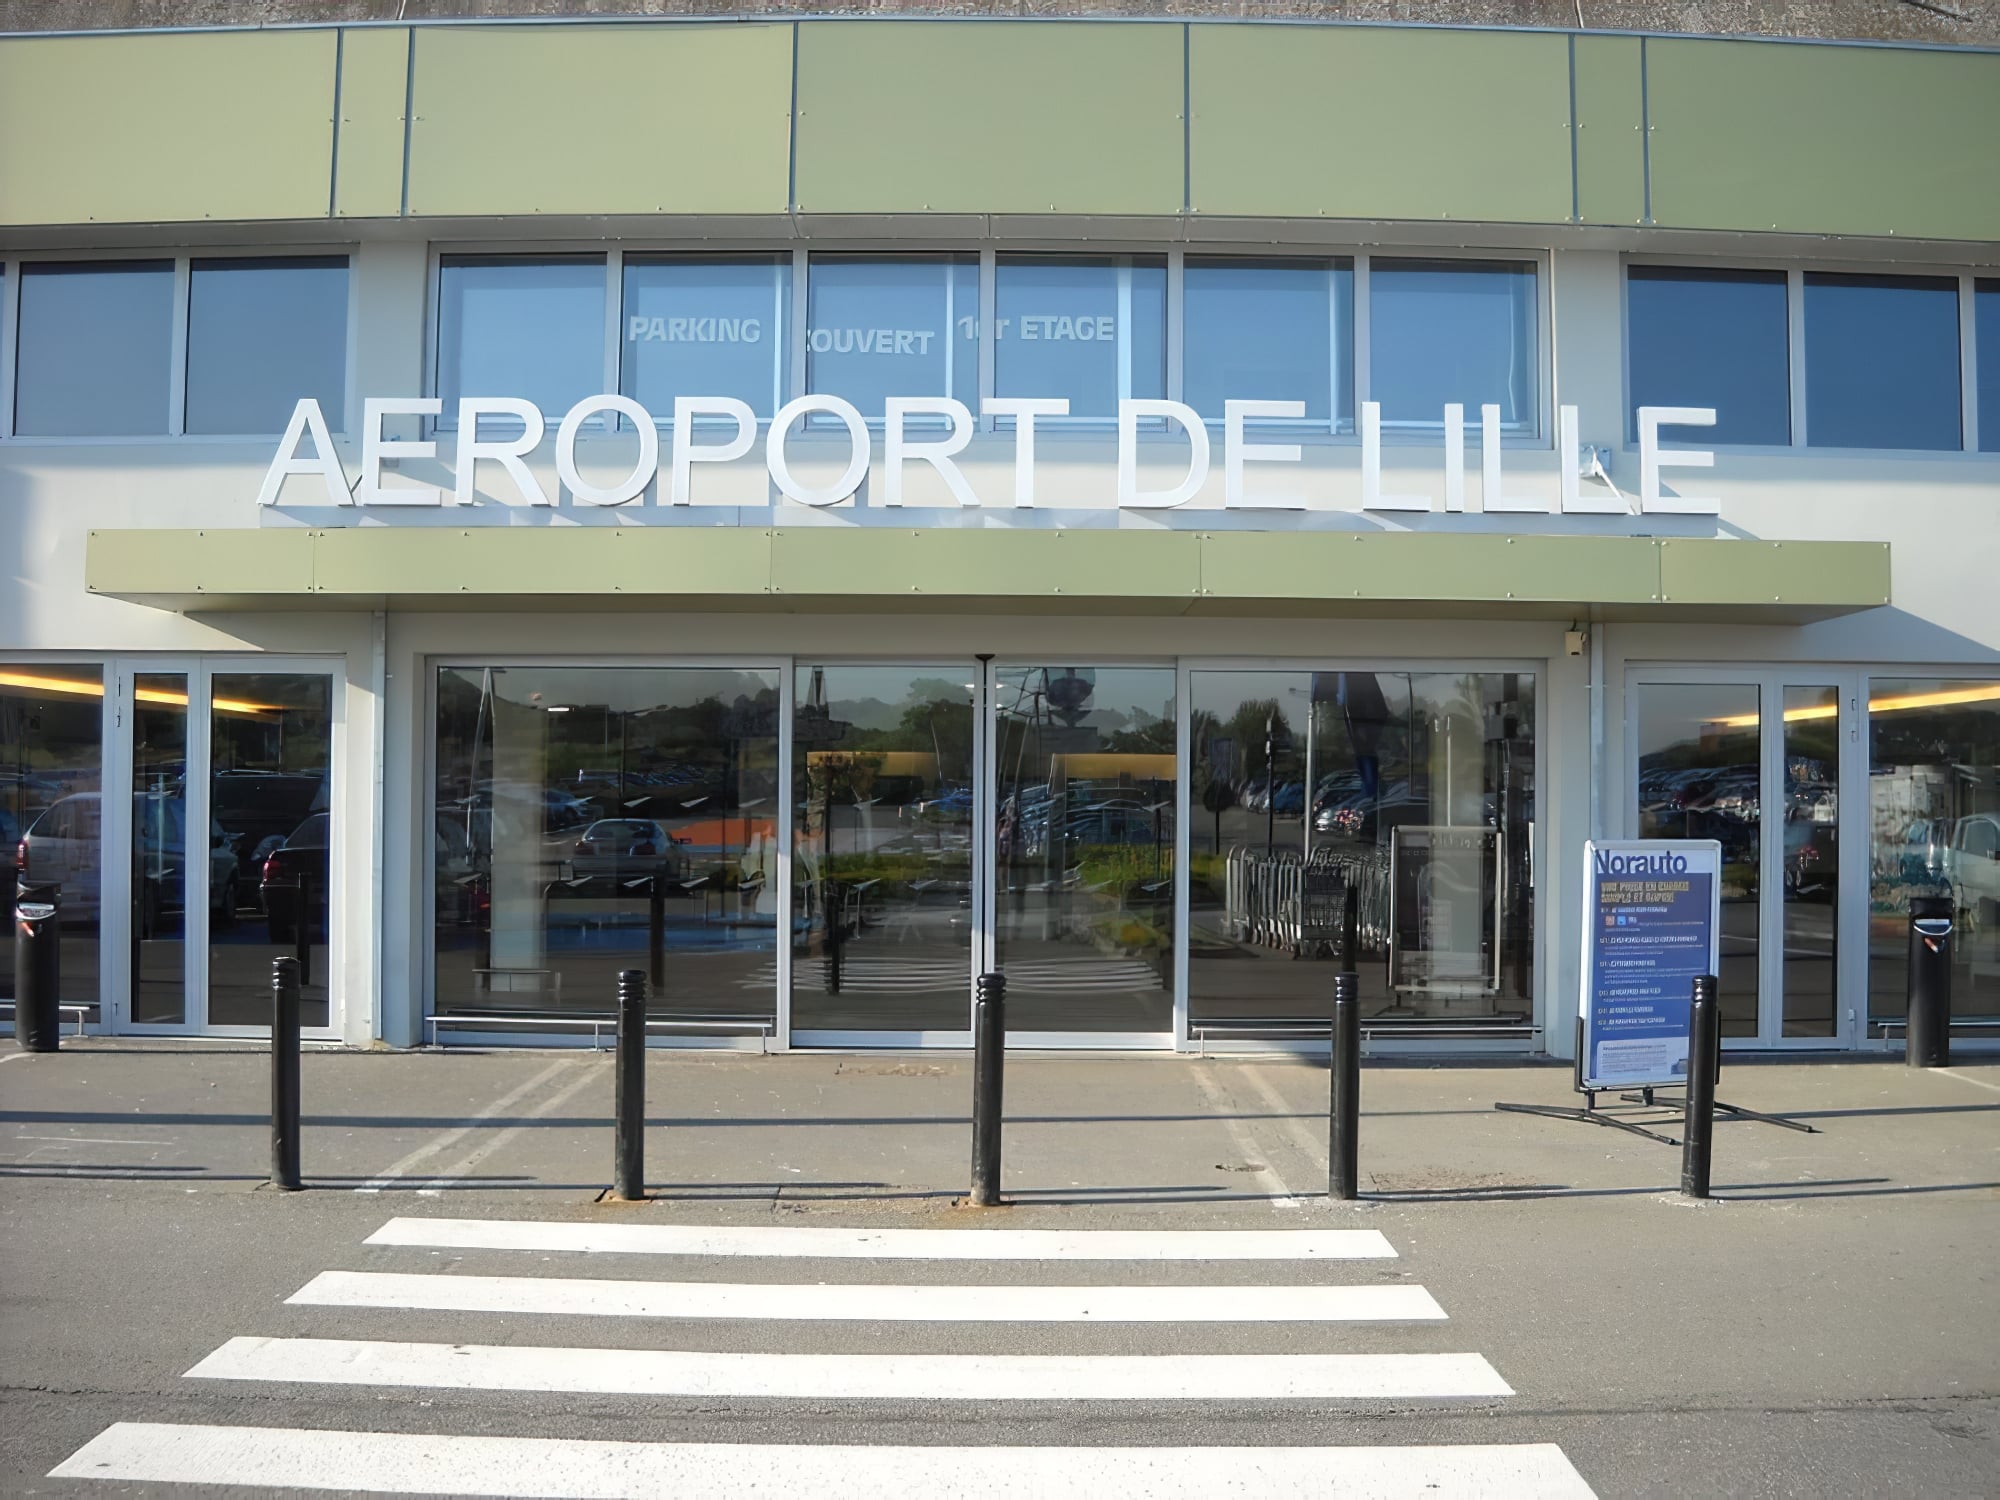 Où dormir près de l'aéroport de Lille ?